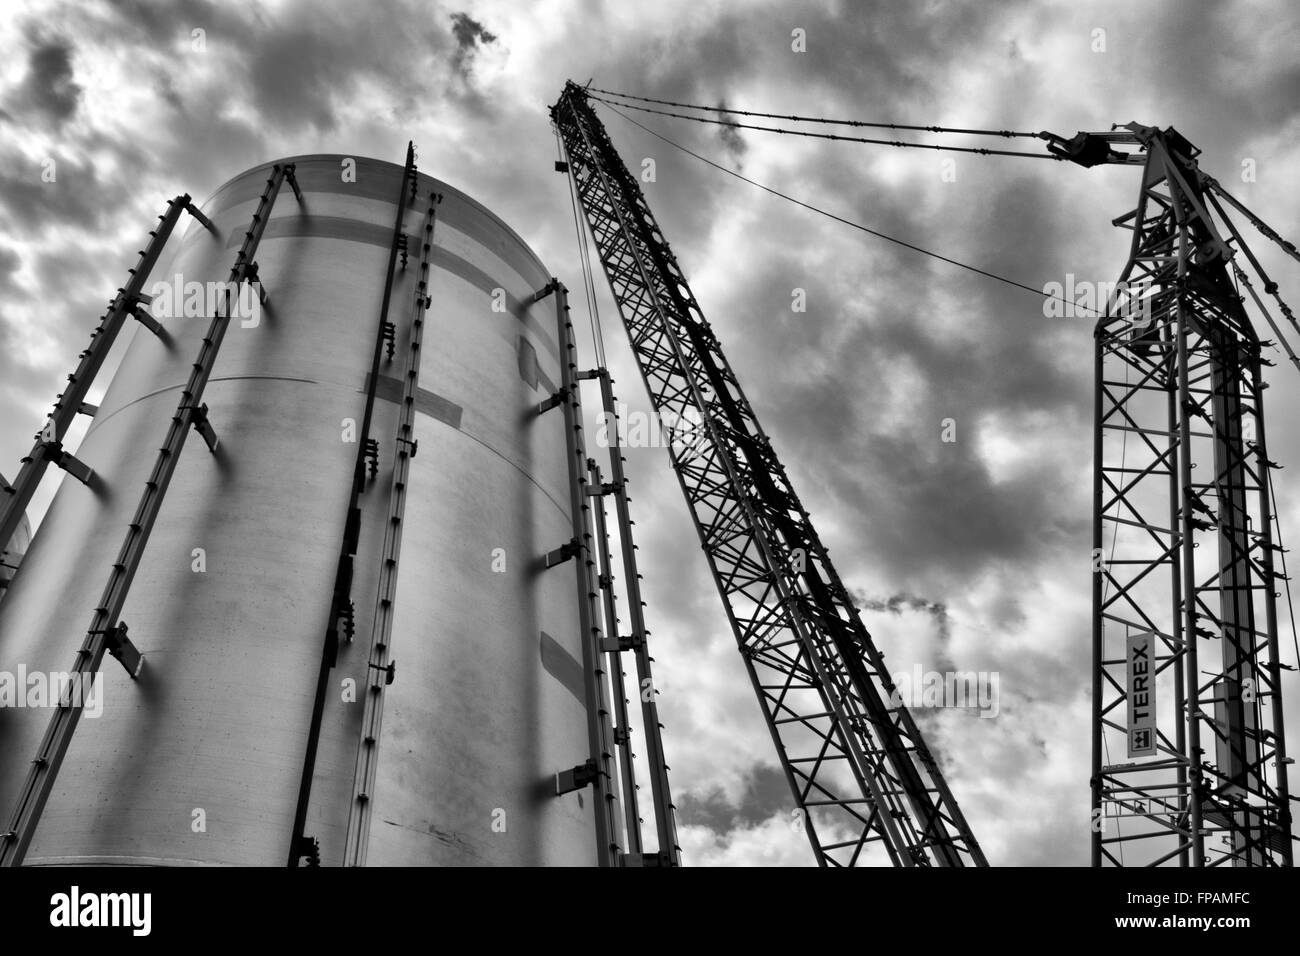 Escena industrial mostrando silo y grúa Foto de stock